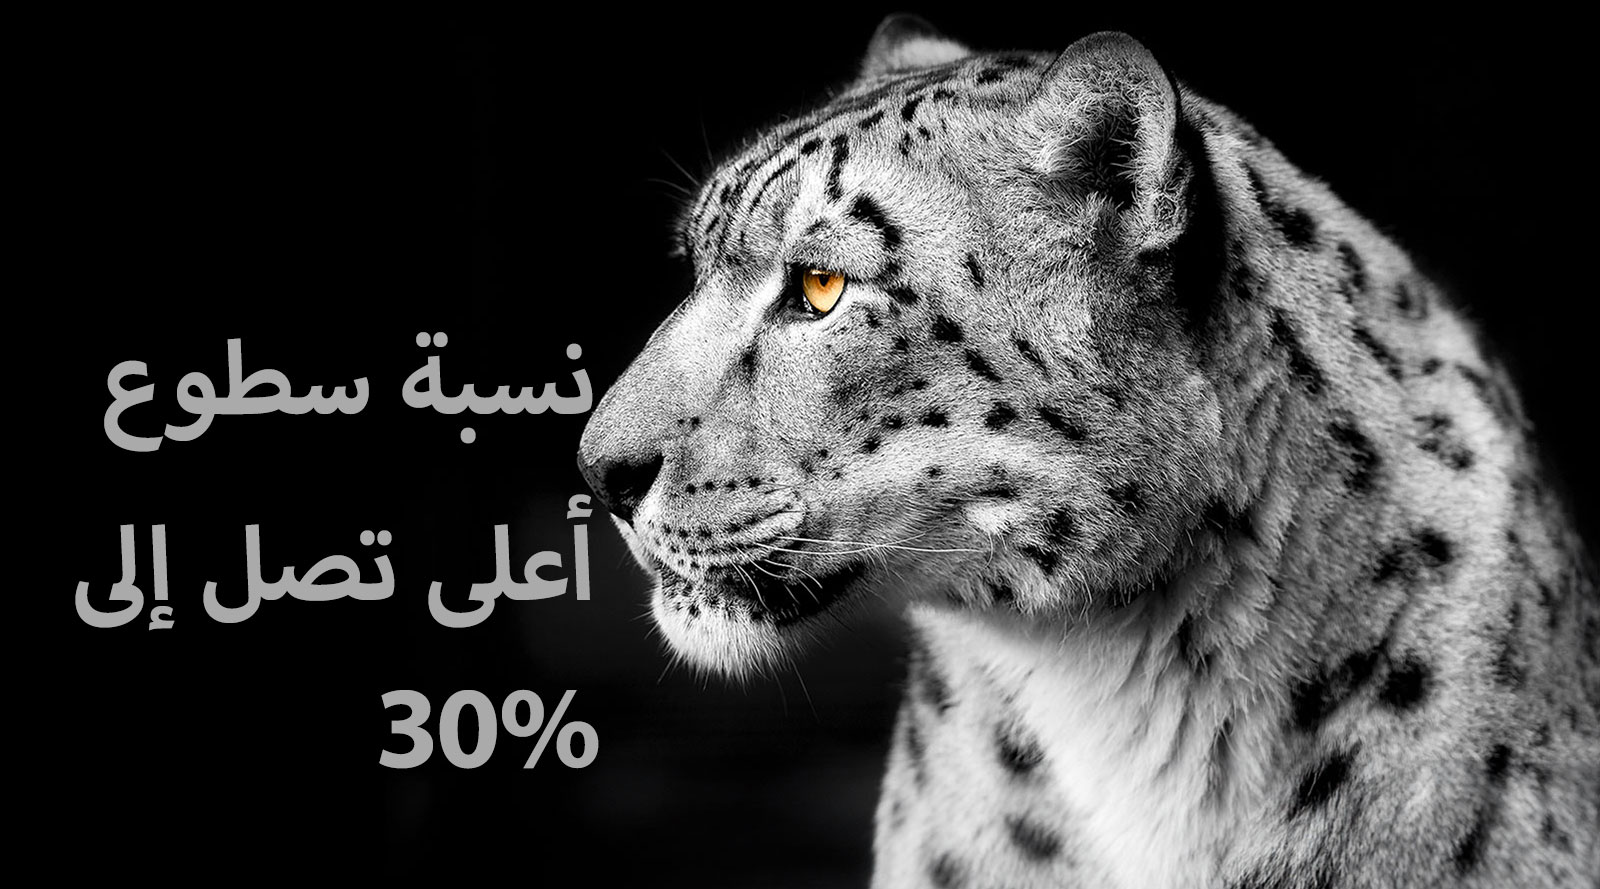 نمر أبيض يظهر جانب وجهه على الجانب الأيسر من الصورة. تظهر الكلمات "نسبة سطوع أعلى تصل إلى 30%" على اليسار.